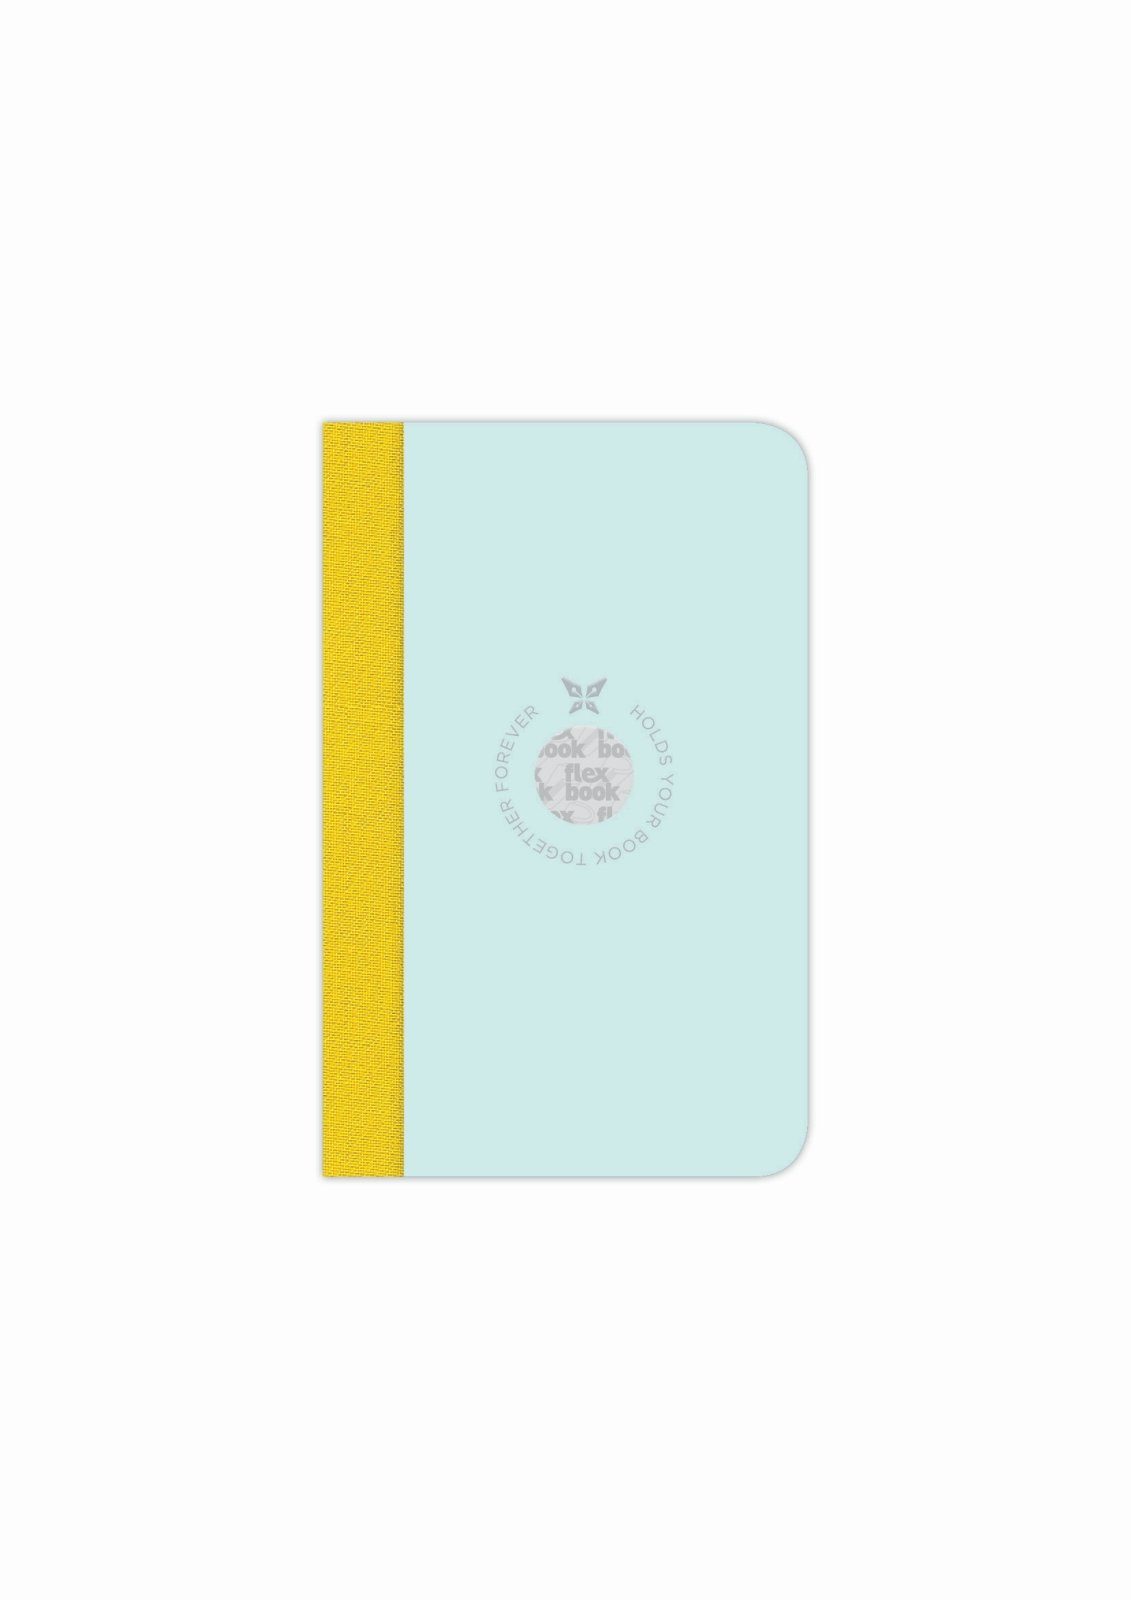 Liniert viele Ökopapiereinband Seiten Hellblau-grün Flexbook Größen/Fa Flexbook Smartbook 160 Notizbuch 9*14cm